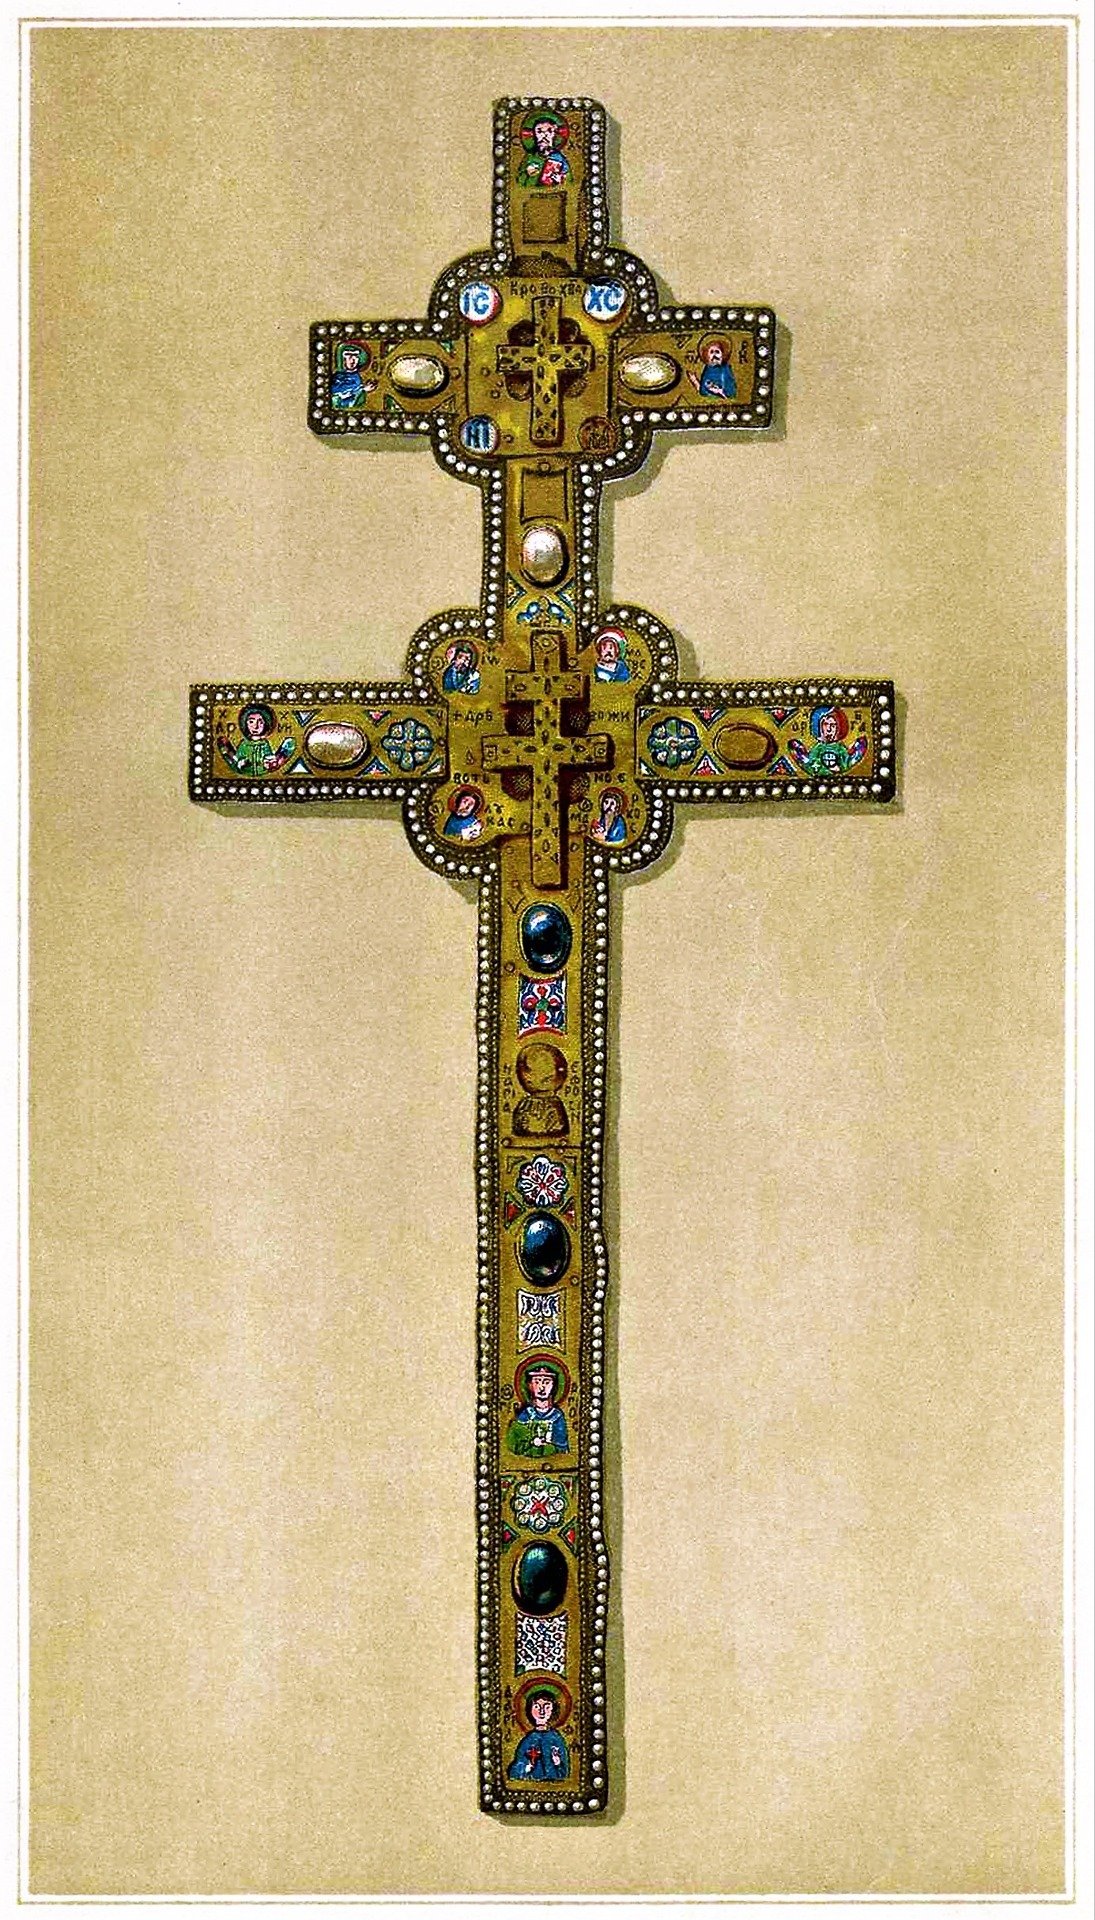 Изображение креста из издания «Белоруссия и Литва», 1889